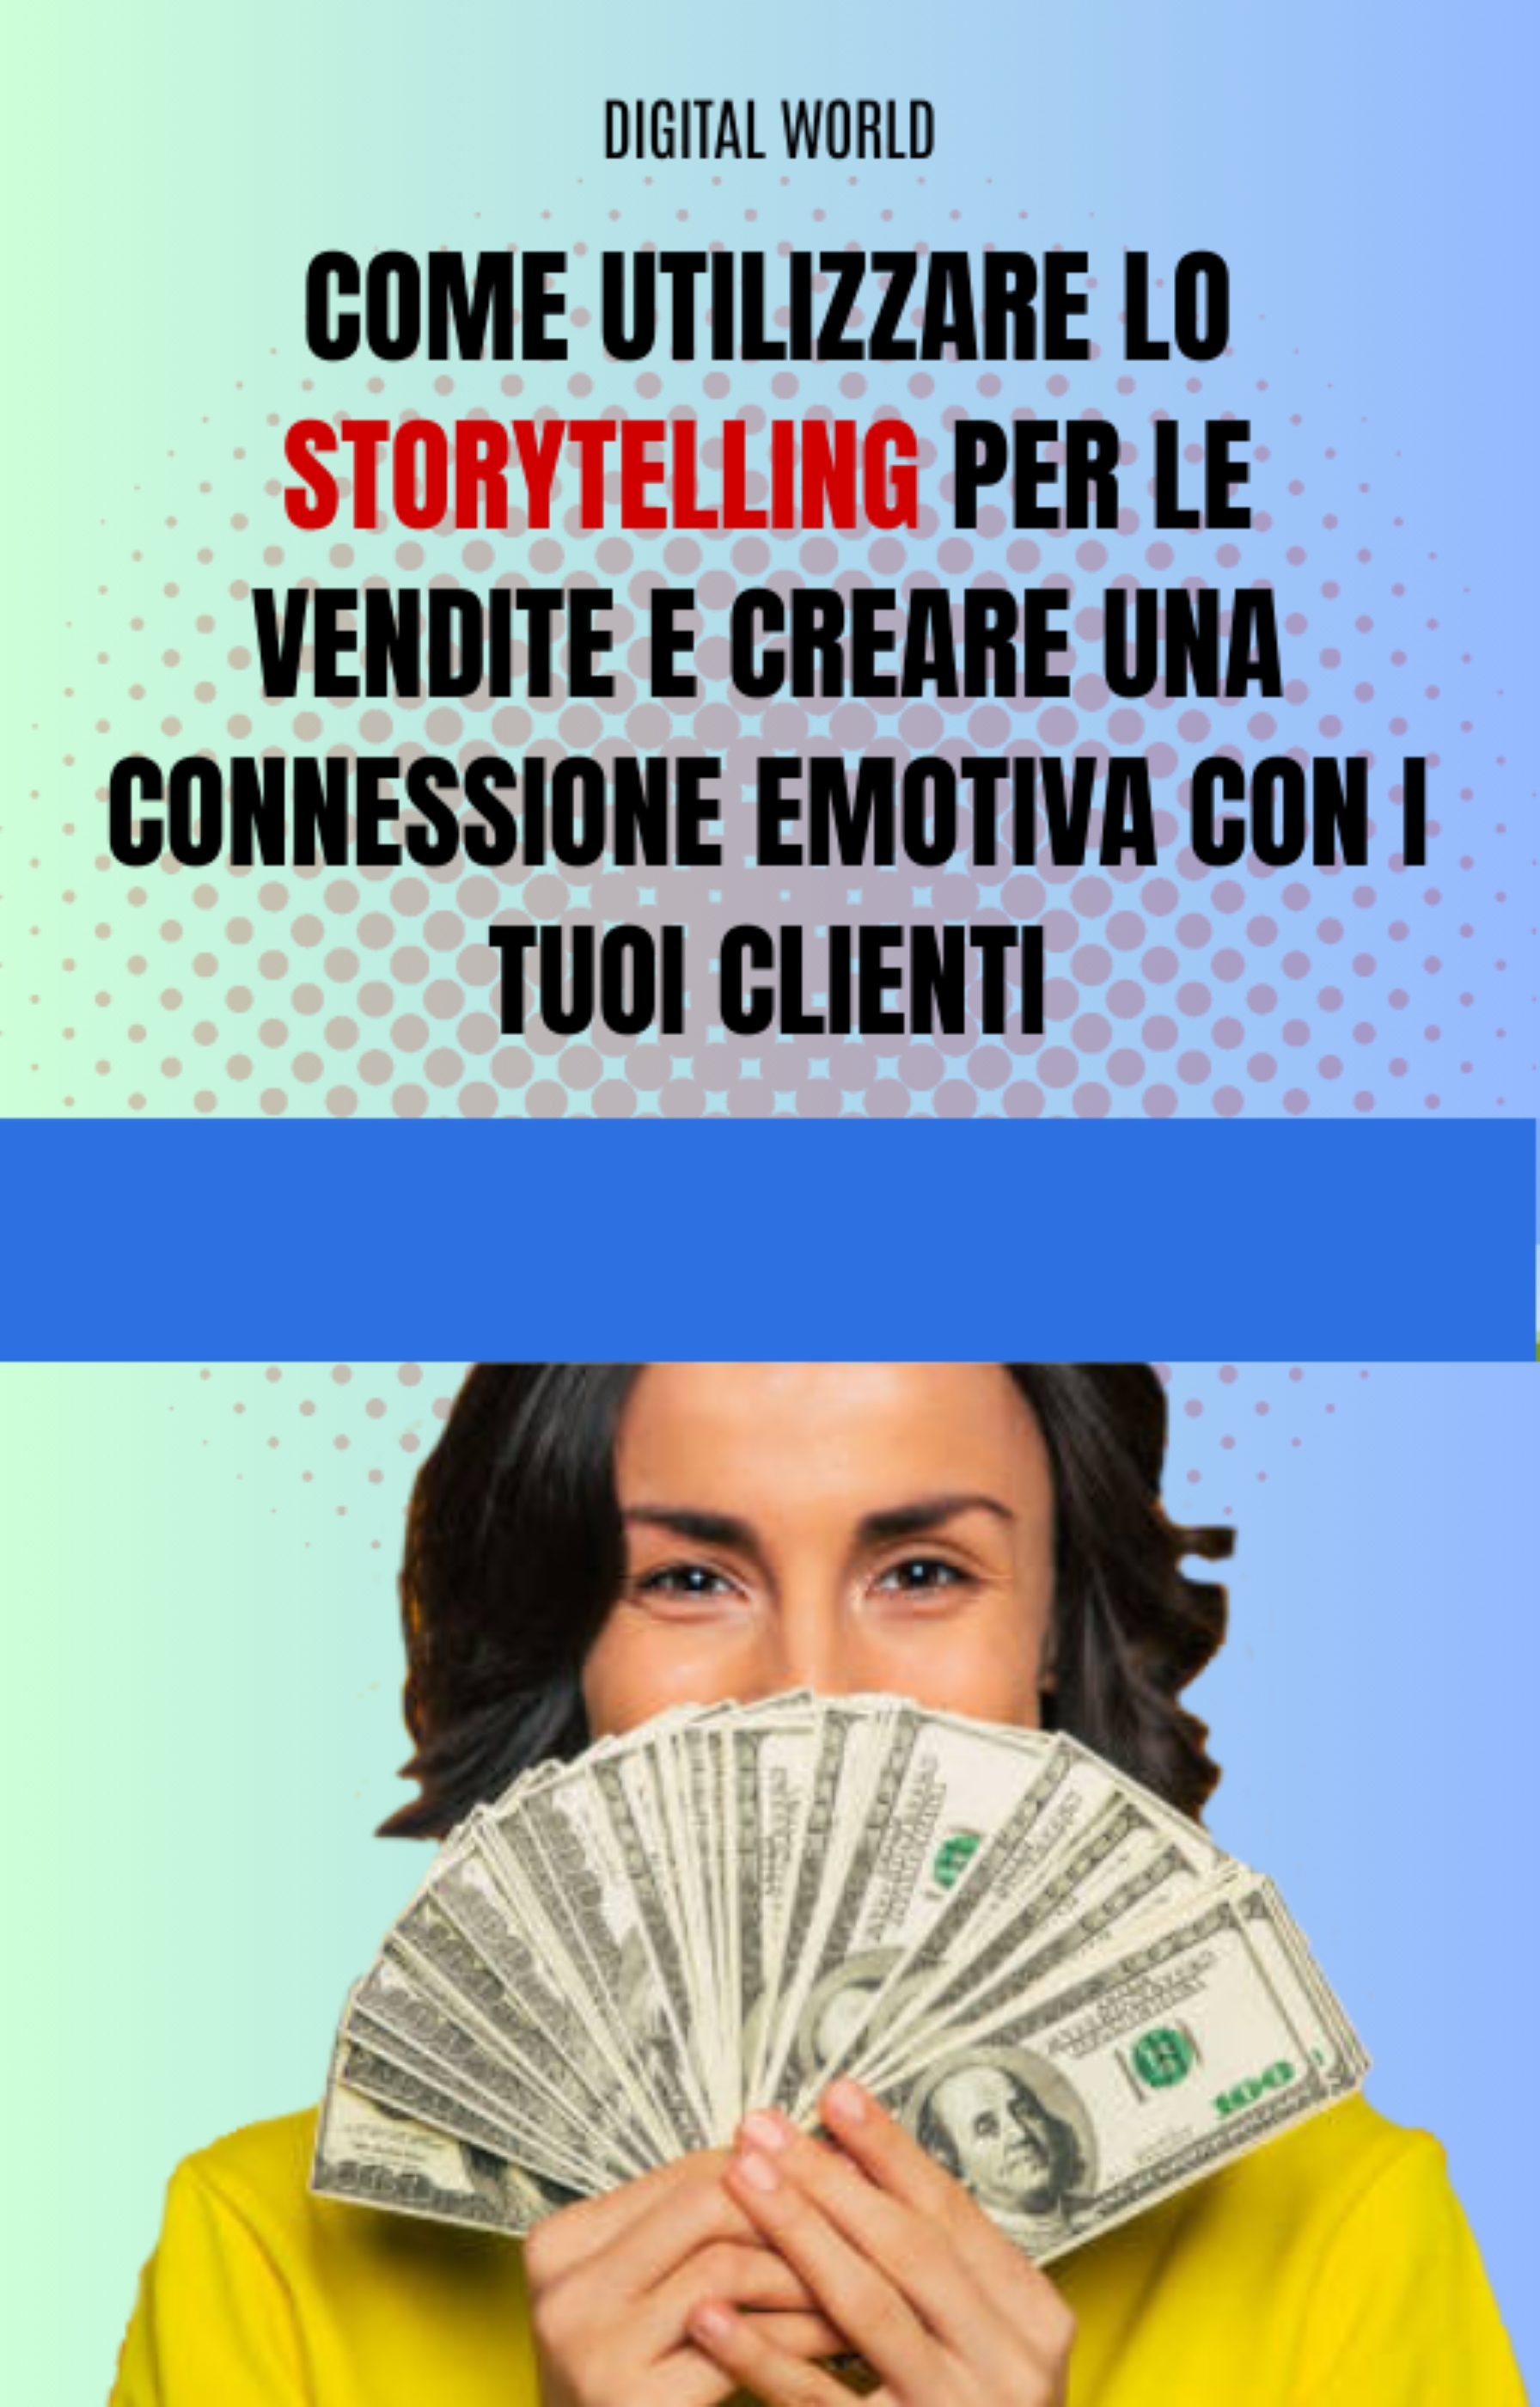 Come utilizzare lo Storytelling per le vendite e creare una connessione emotiva con i tuoi clienti